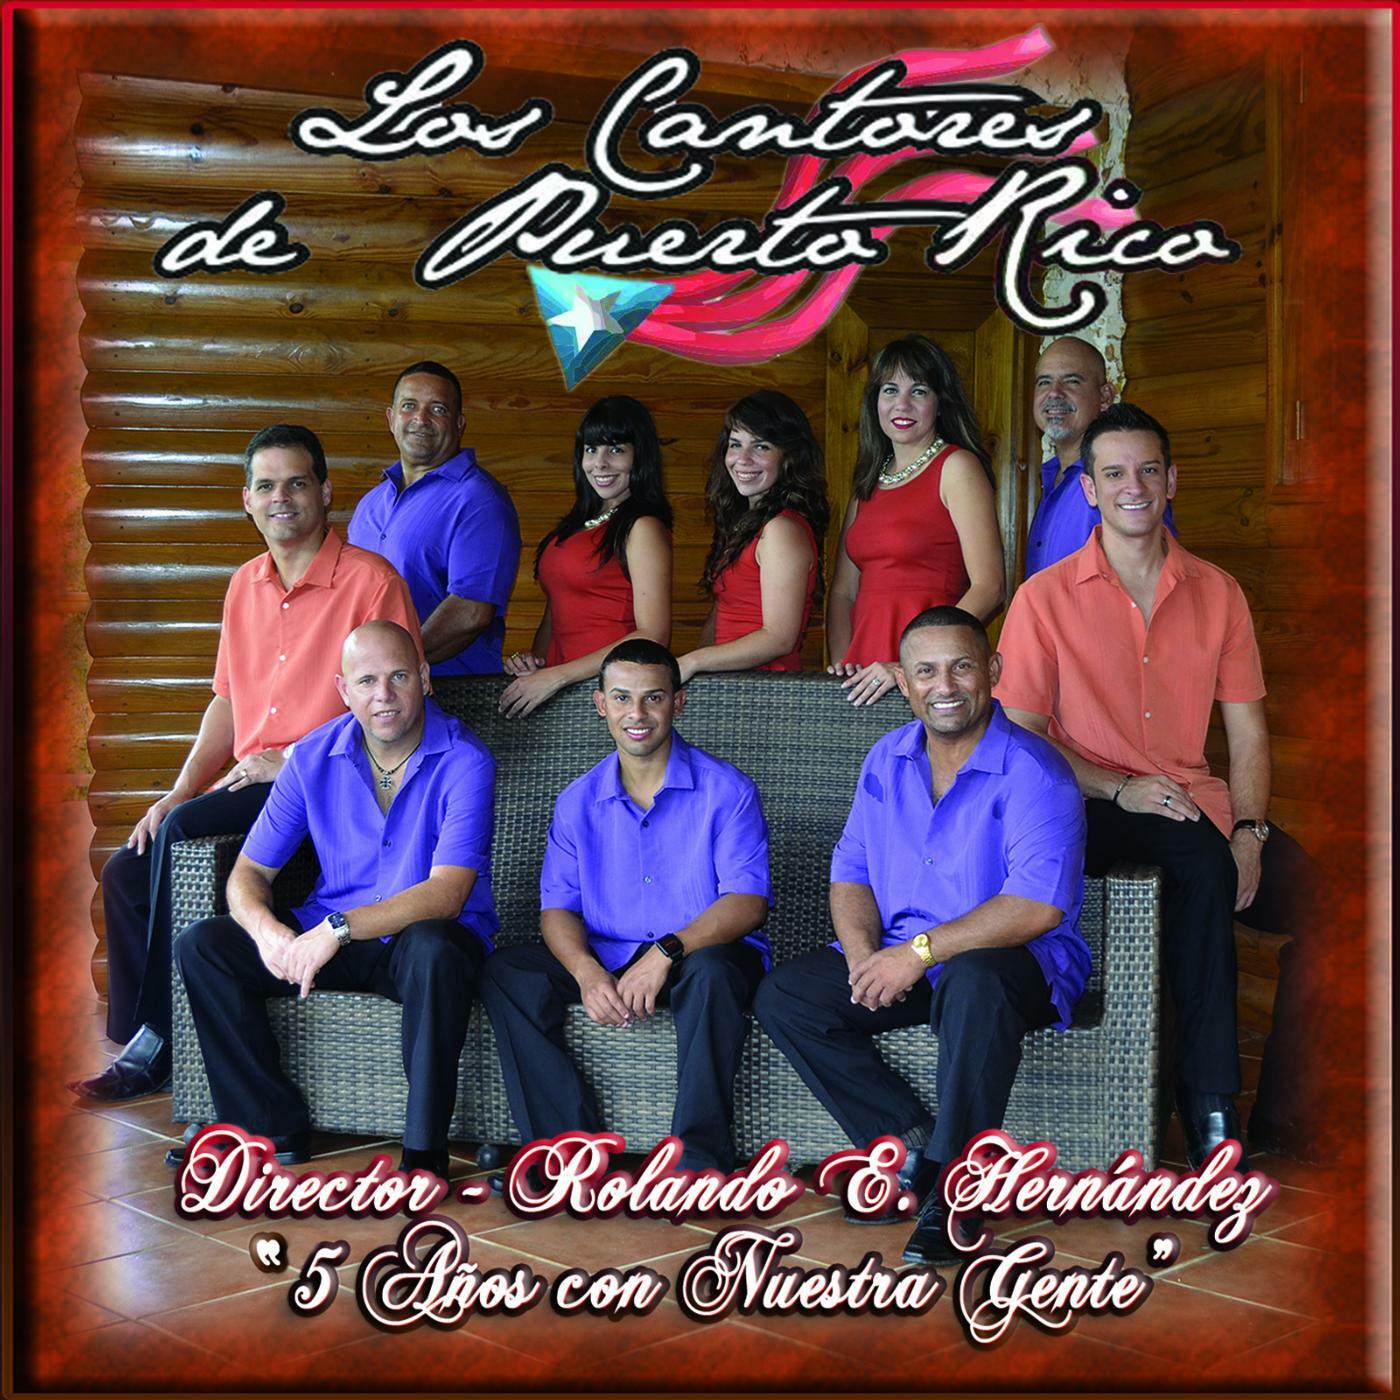 Los Hijos de Puerto Rico Radio: Listen to Free Music & Get The Latest